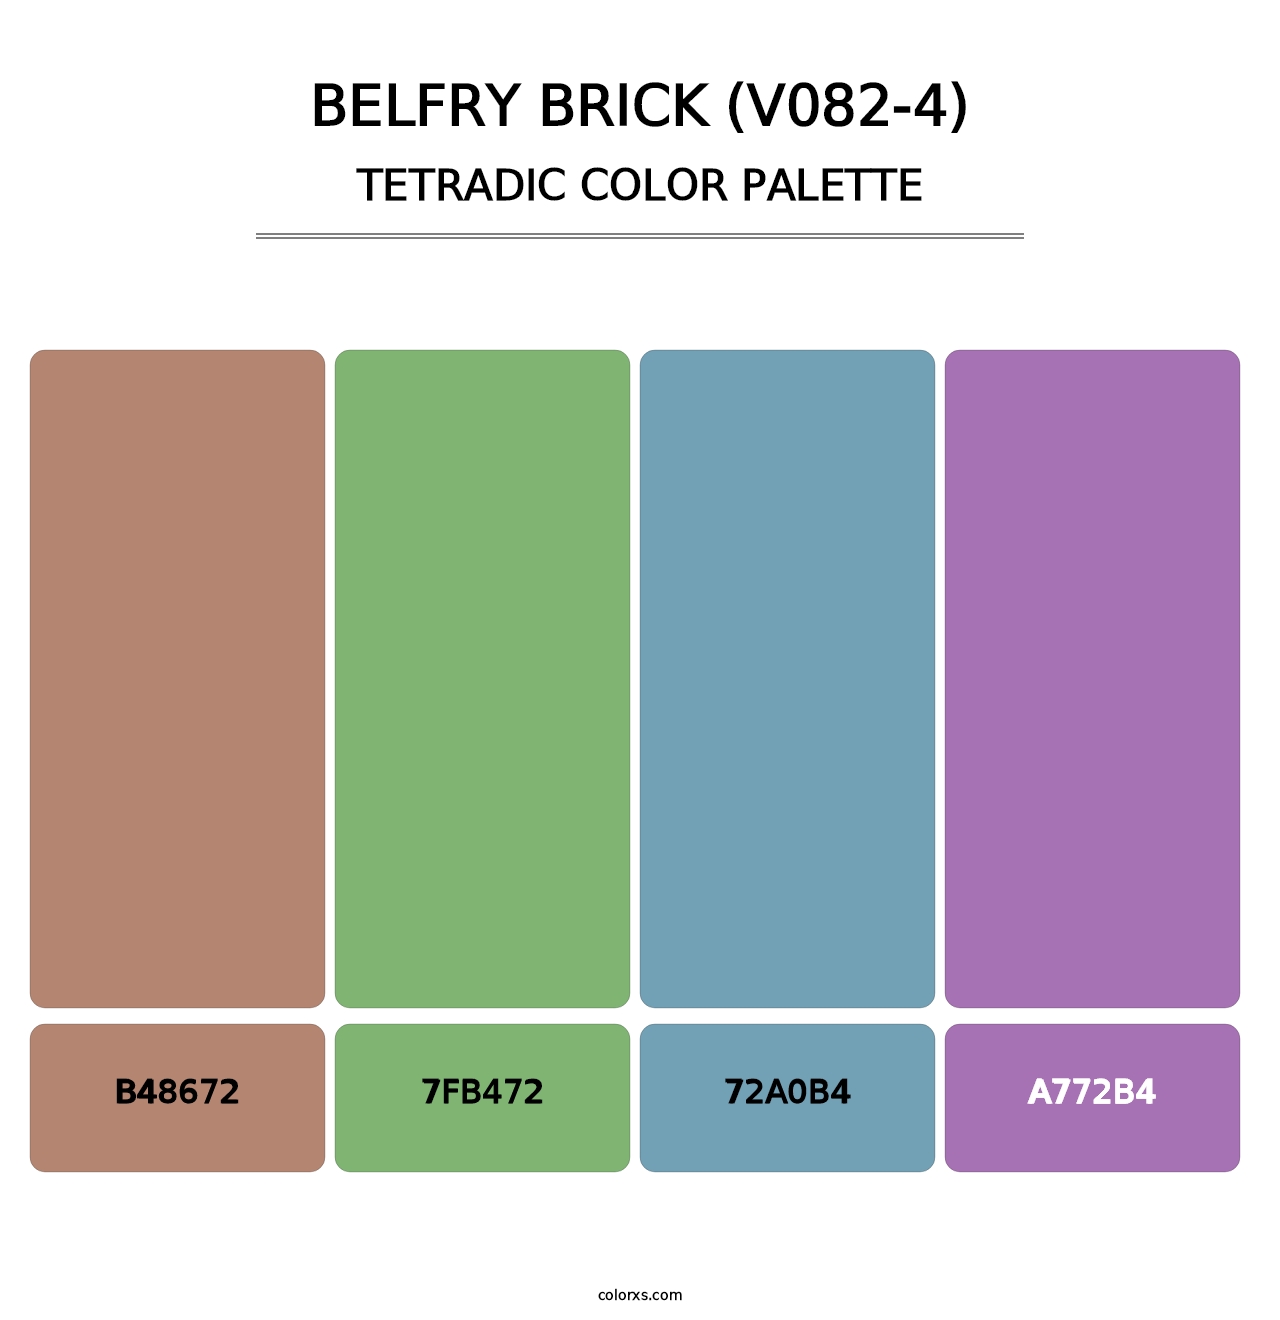 Belfry Brick (V082-4) - Tetradic Color Palette